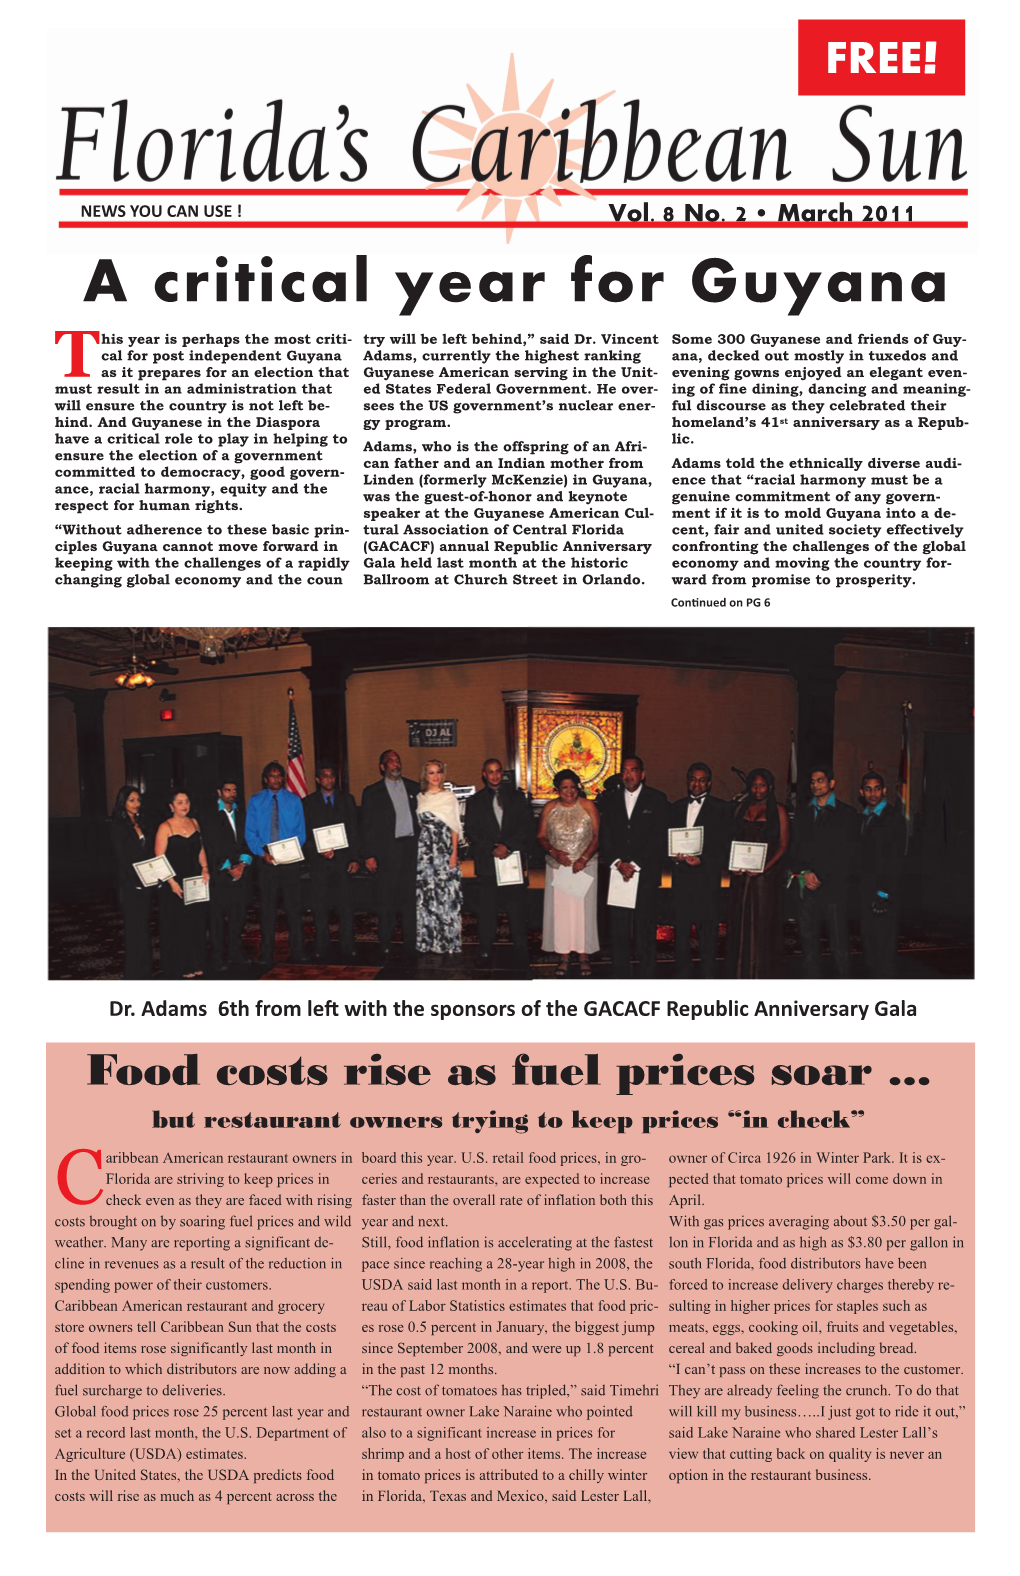 A Critical Year for Guyana